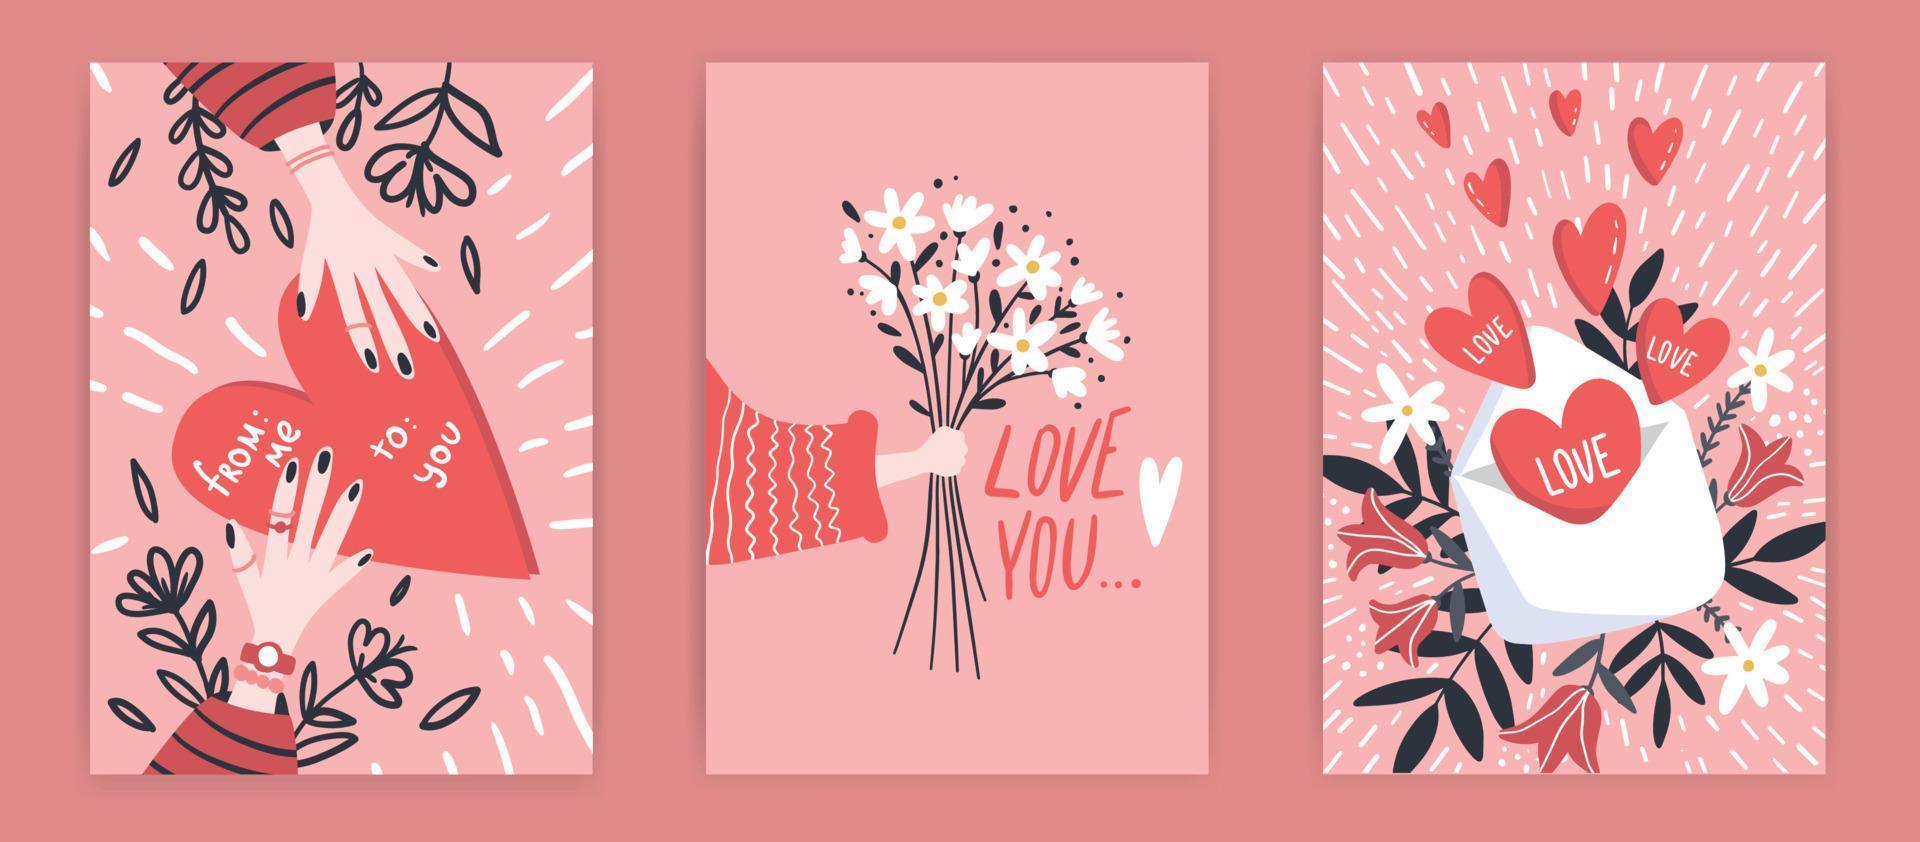 romantisch reeks van groet kaarten voor Valentijnsdag dag. vector verzameling met borstel belettering en hand- geschreven elementen. roos, roze en wit kleur etiketten voor uw ontwerp en uitnodiging